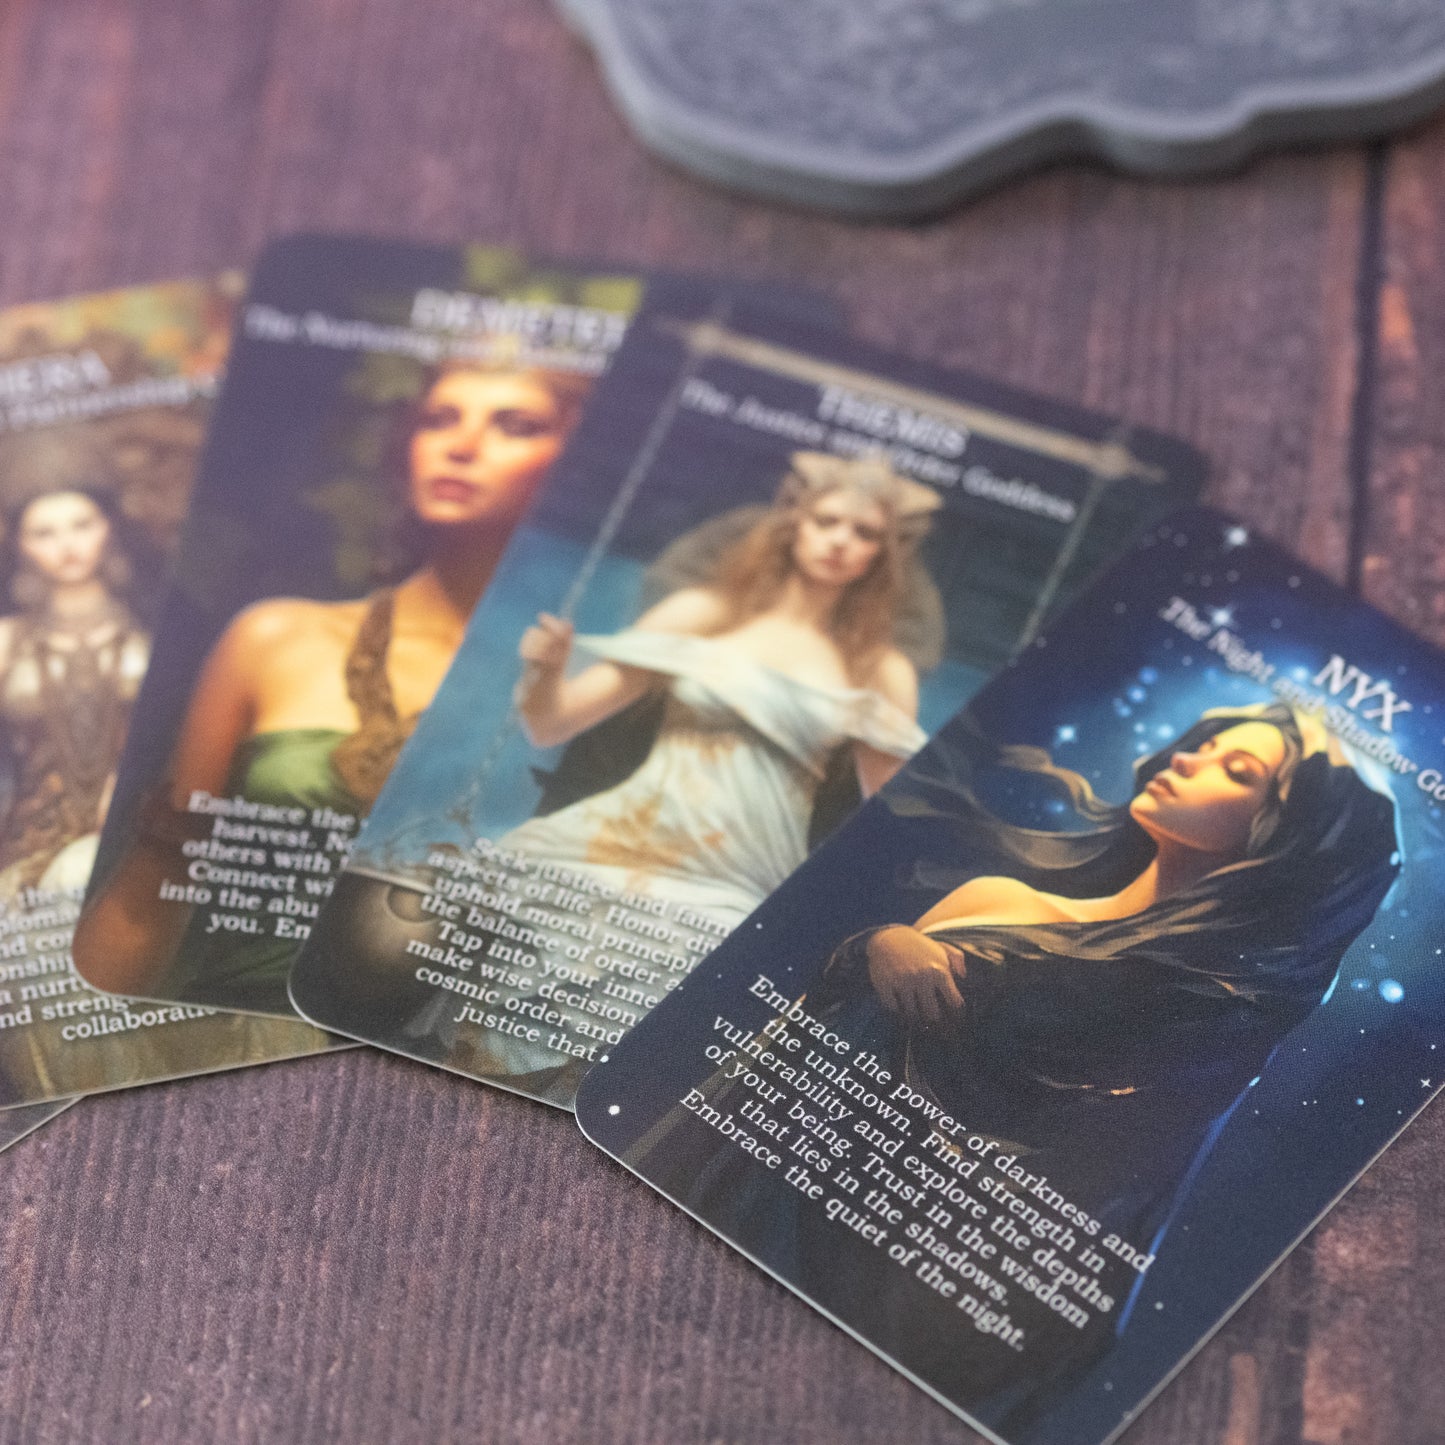 Greek Goddess oracle cards - oracle deck, 16 card deck, affirmation cards, tarot deck, oracle cards, feminine cards, greek pantheon